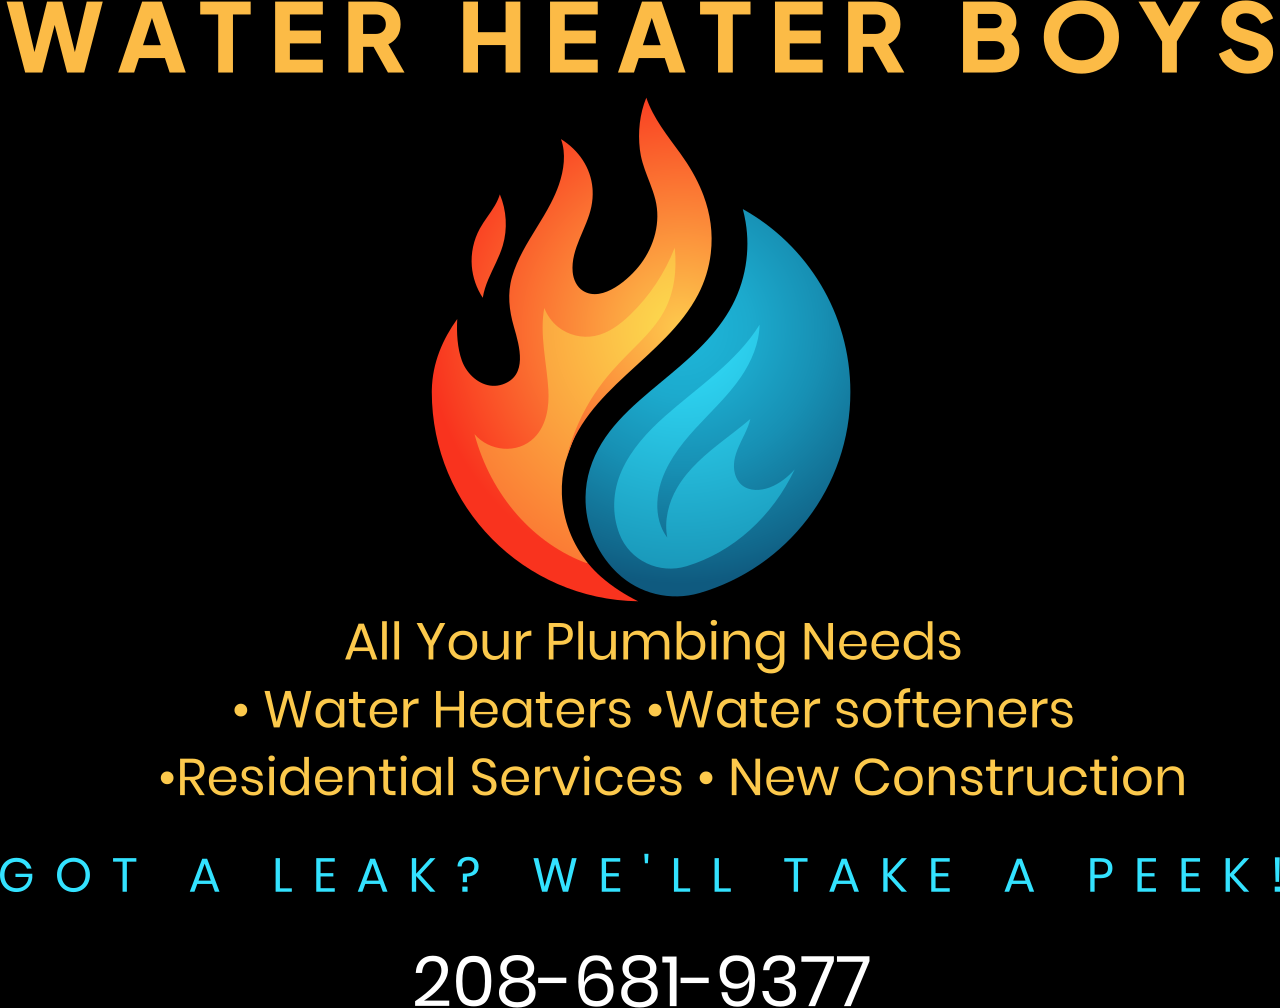 Water Heater Boys's logo